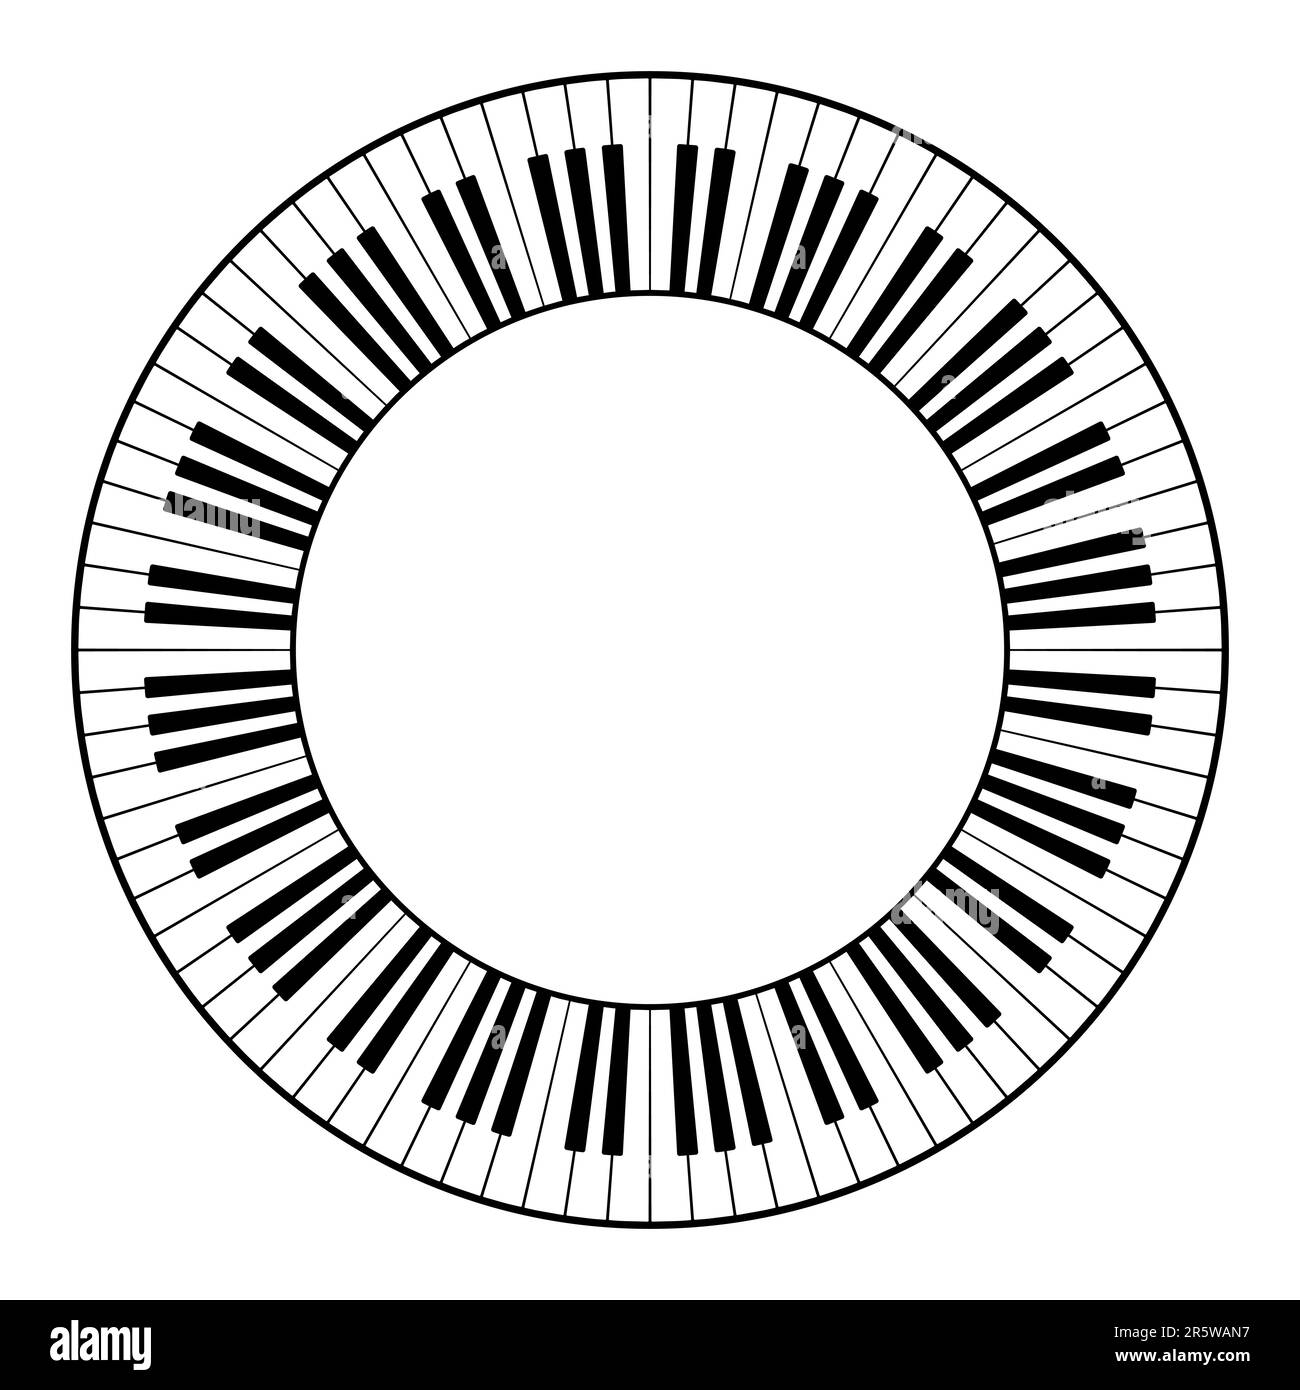 Clavier musical avec douze octaves, cadre circulaire. Bordure décorative, construite à partir de douze octaves, touches noires et blanches de clavier de piano. Banque D'Images